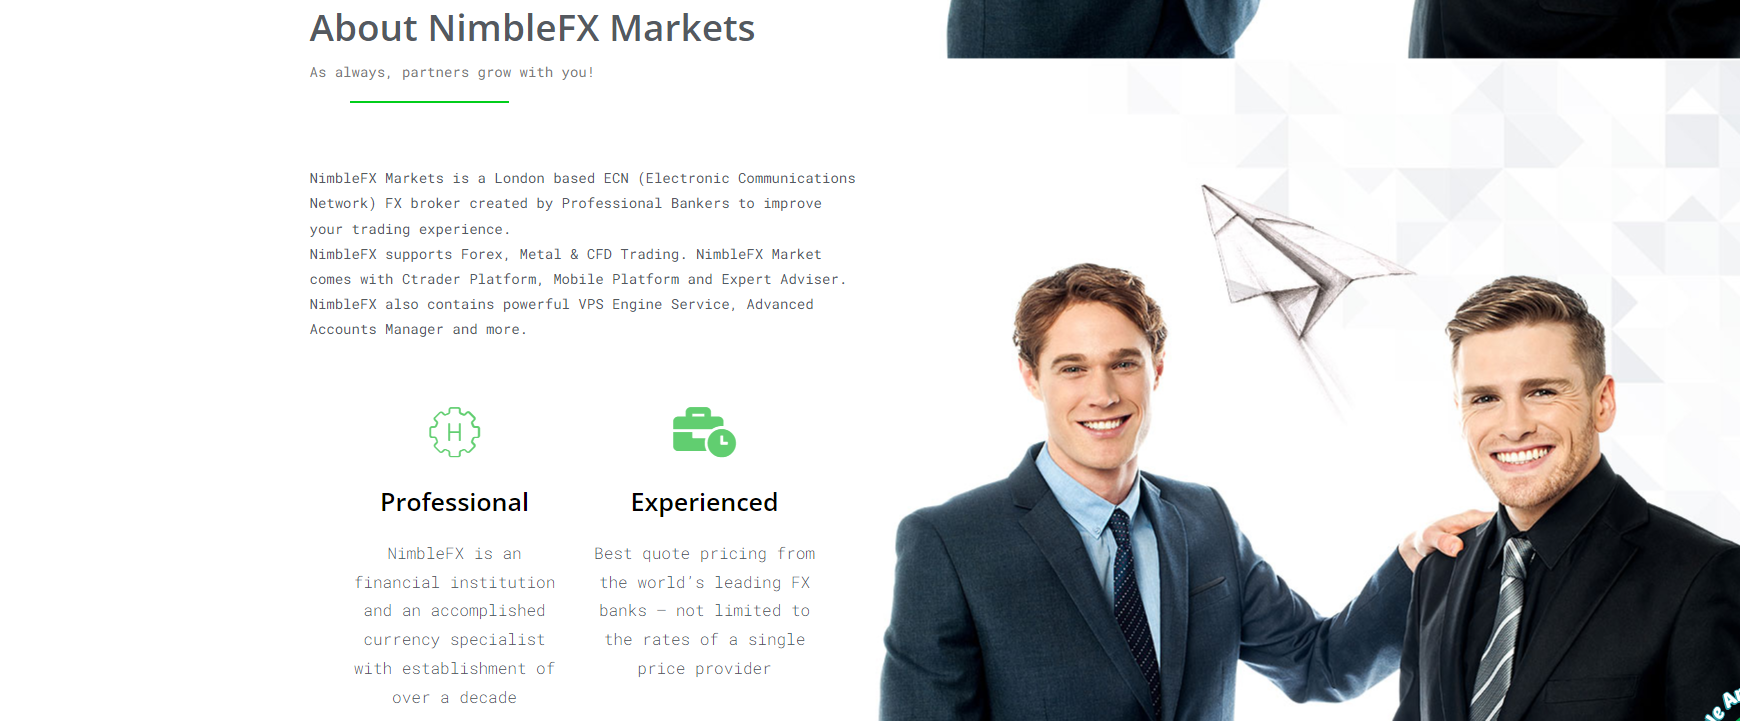 nimblefx markets обзор компании 